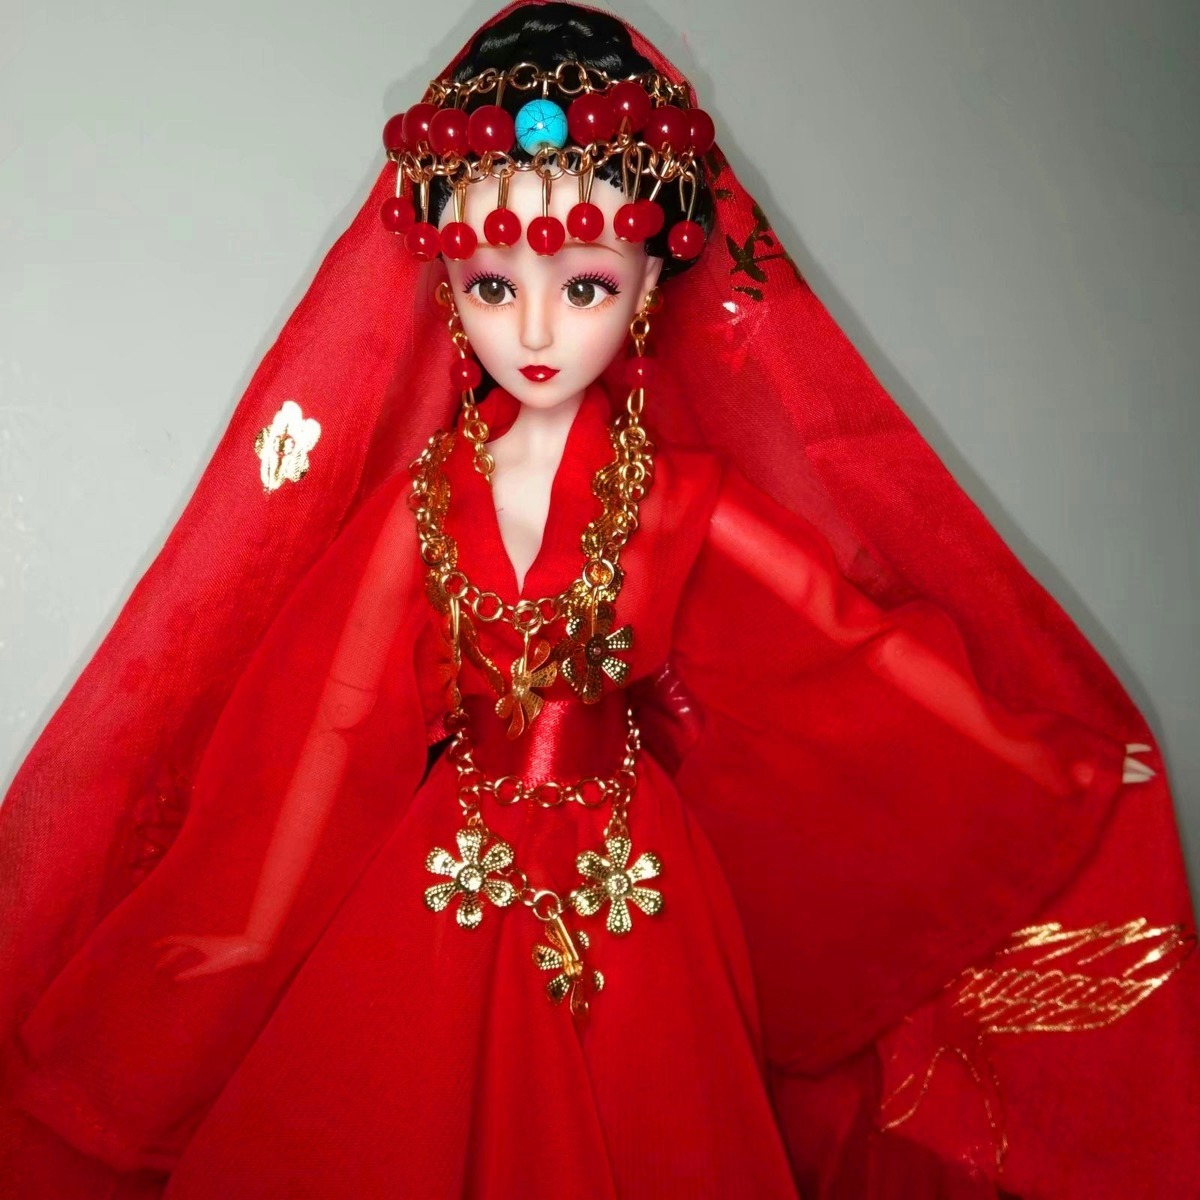 古装芭比娃娃套装古装娃娃衣服换装玩具女孩生日礼物古装娃娃白浅